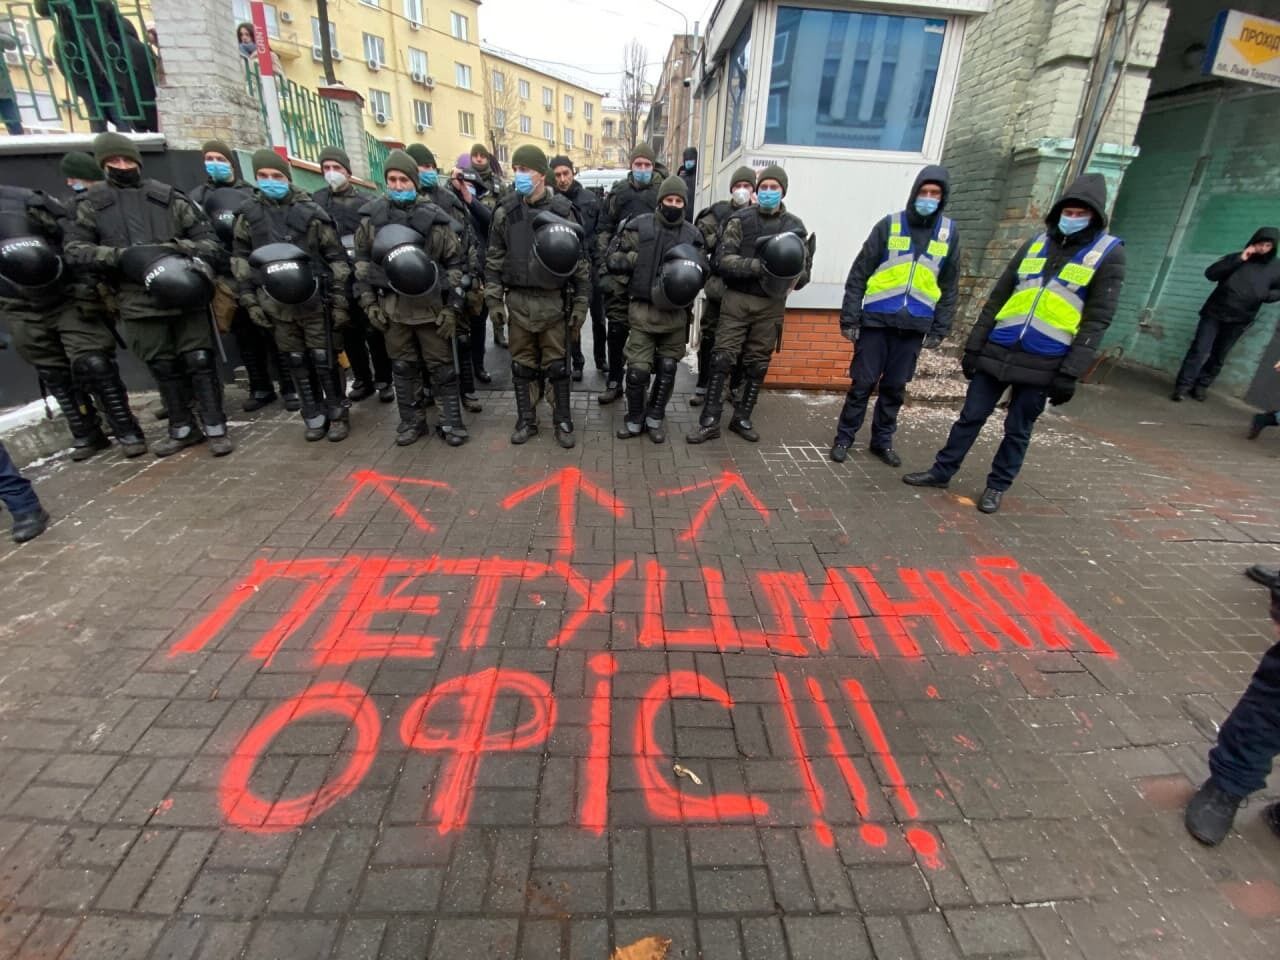 Активисты Нацкорпуса провели небольшой перформанс, оставив надпись на асфальте "Петушиный офис"